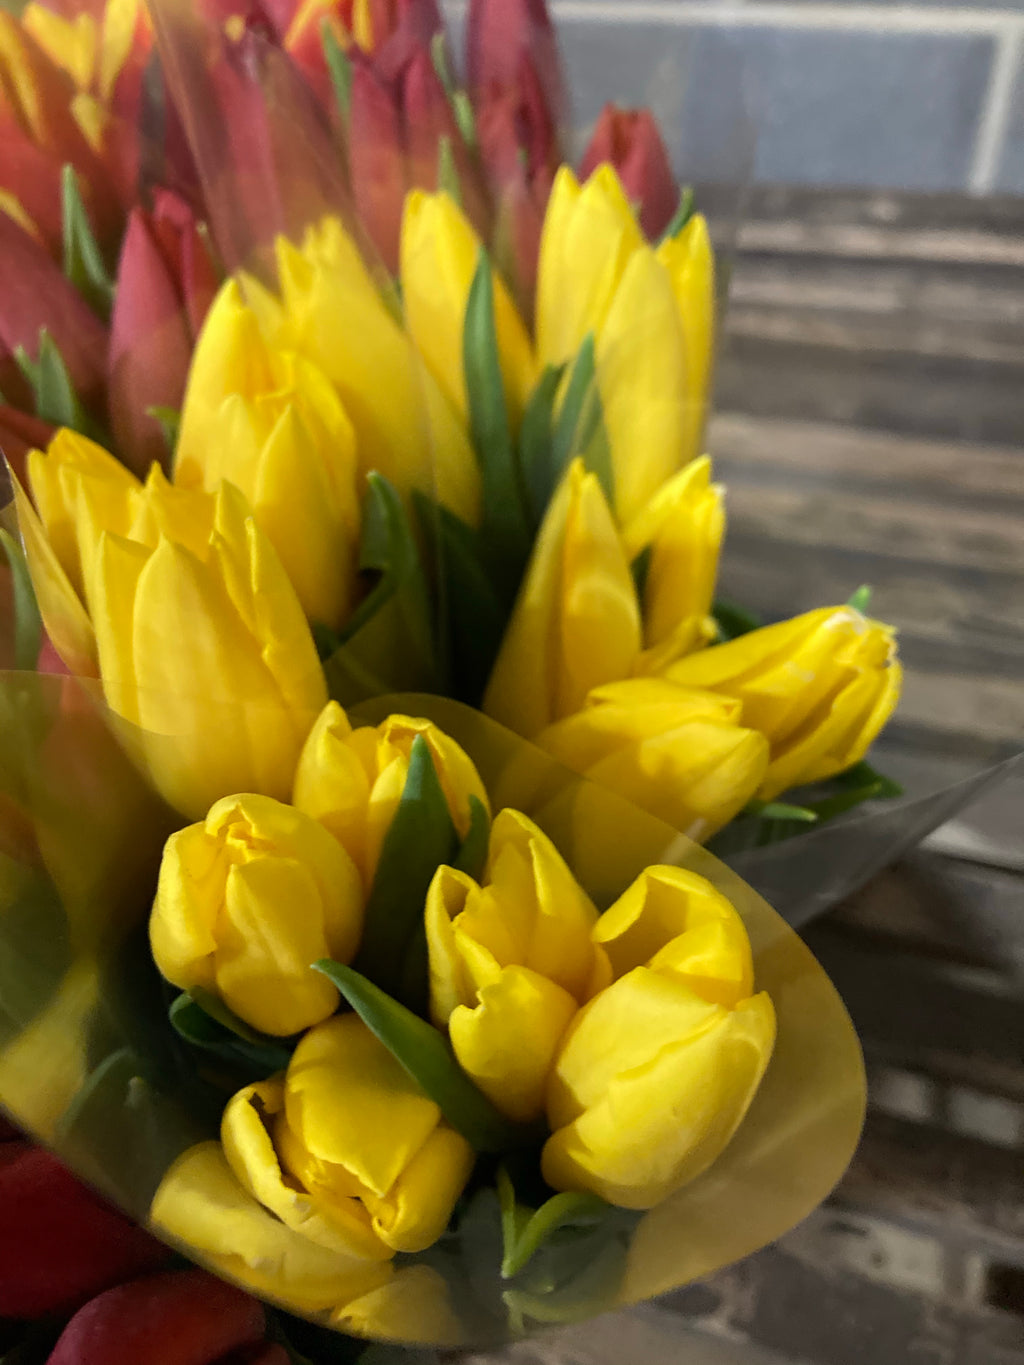 10 x Yellow Tulip 'Yokohama' Bulbs (Free UK Postage)